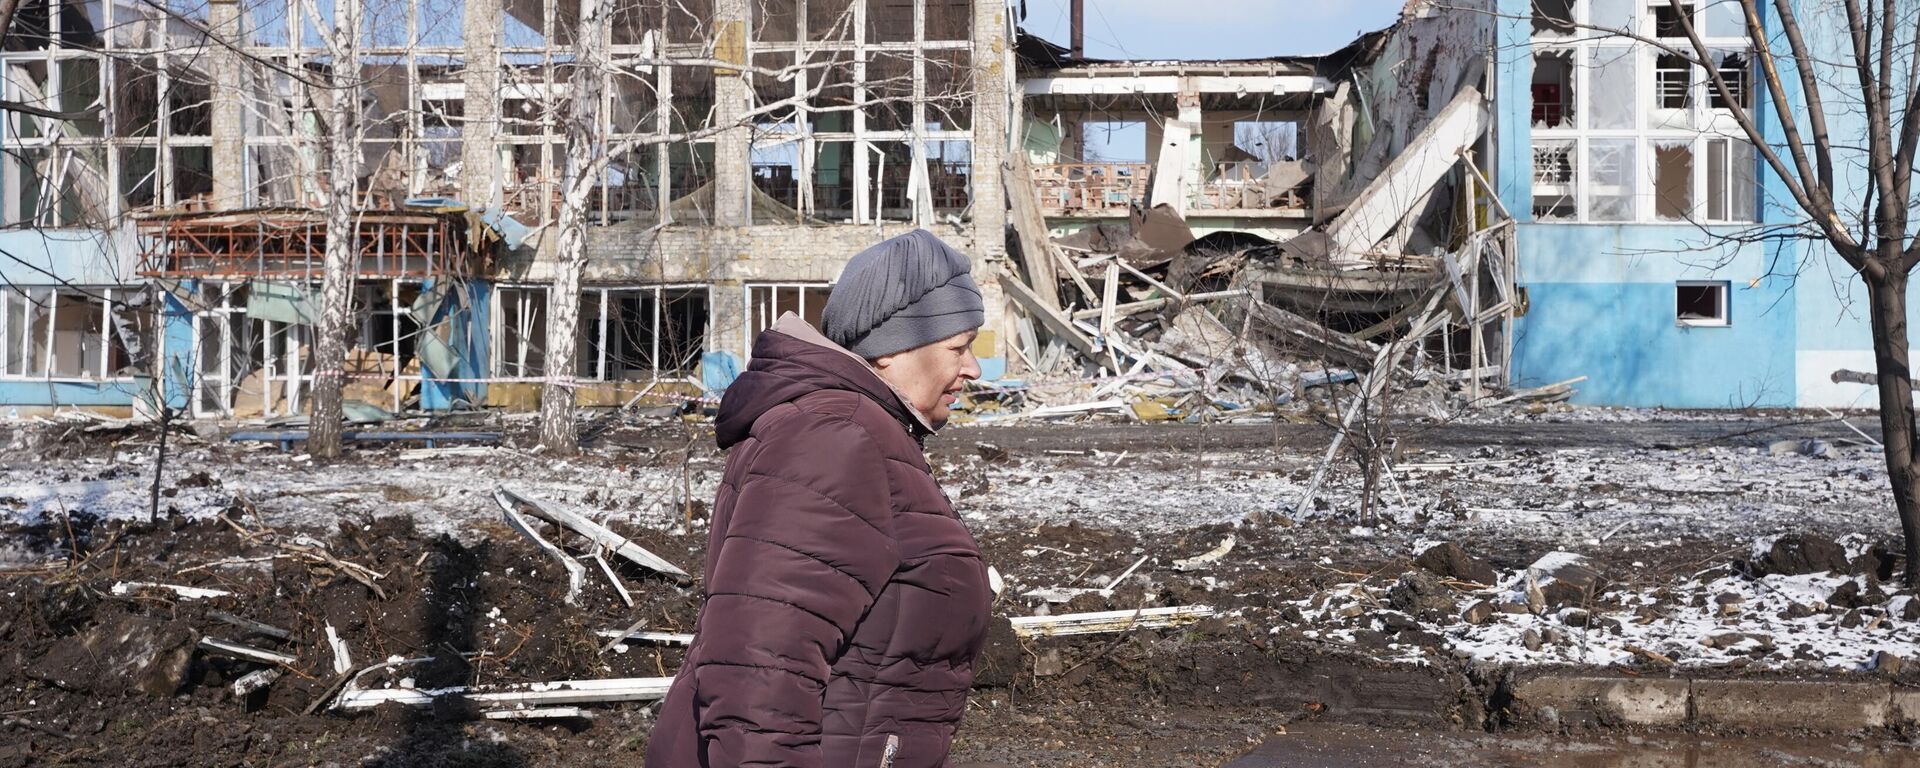 Las consecuencias de un bombardeo de las FFAA ucranianas en Debaltsevo, República Popular de Donetsk, el 22 de febrero  - Sputnik Mundo, 1920, 01.03.2023